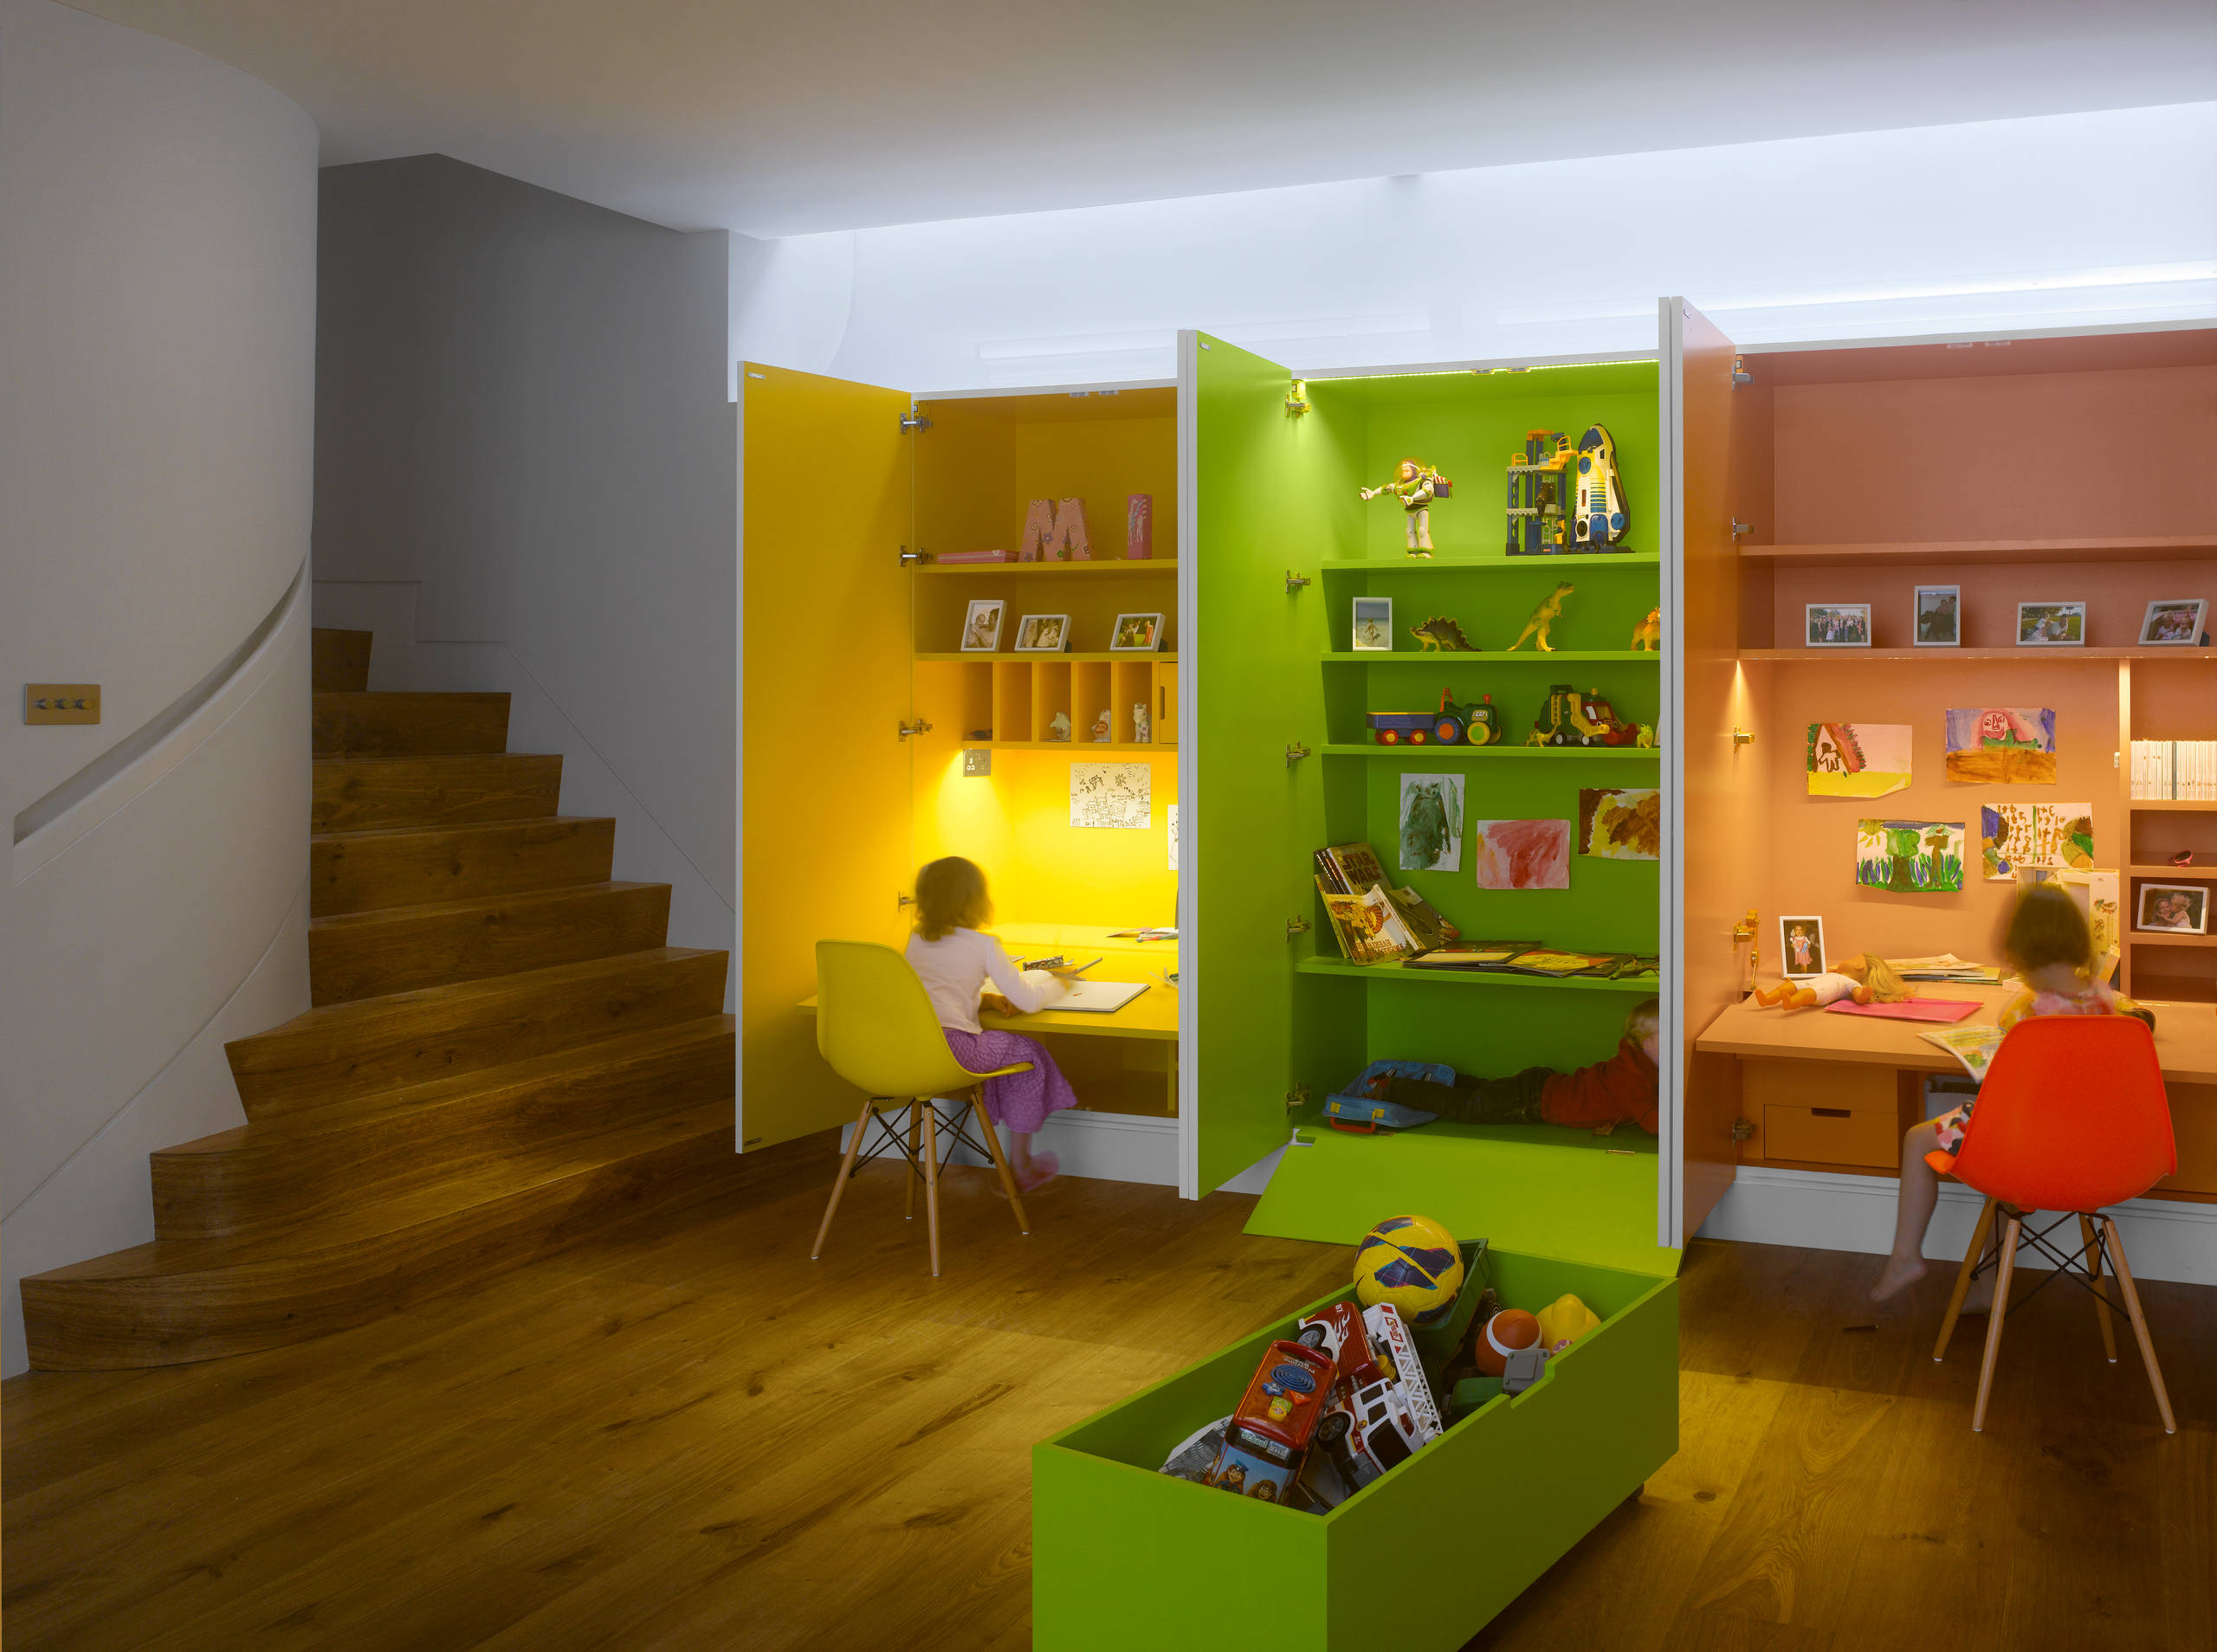 9 Ideen für schöne Kinder-Spielecken in der Wohnung